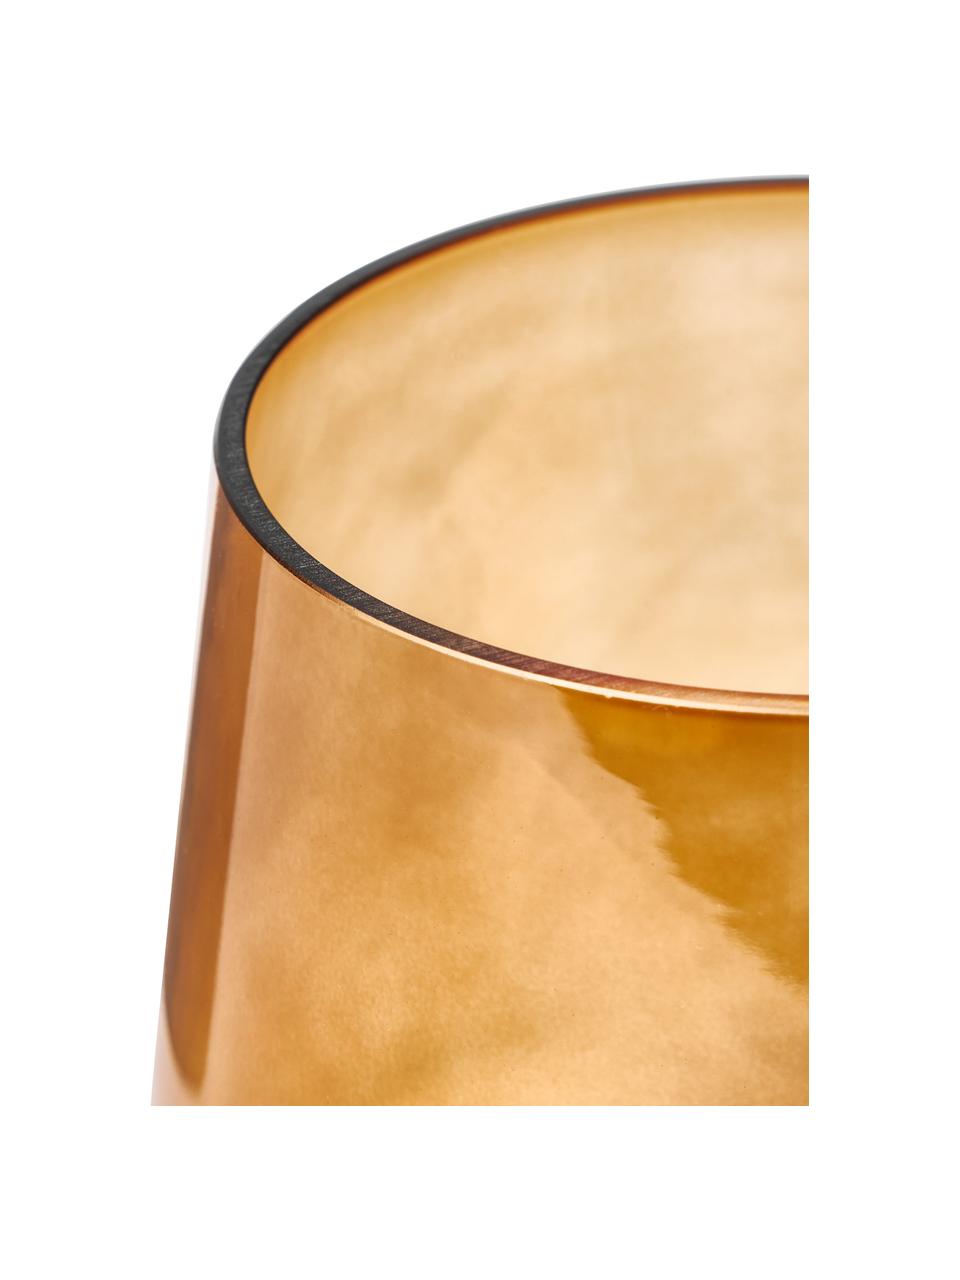 Mundgeblasene Glas-Vase Joyce in Bernsteinfarben, Glas, Bernsteinfarben, Ø 16 x H 16 cm